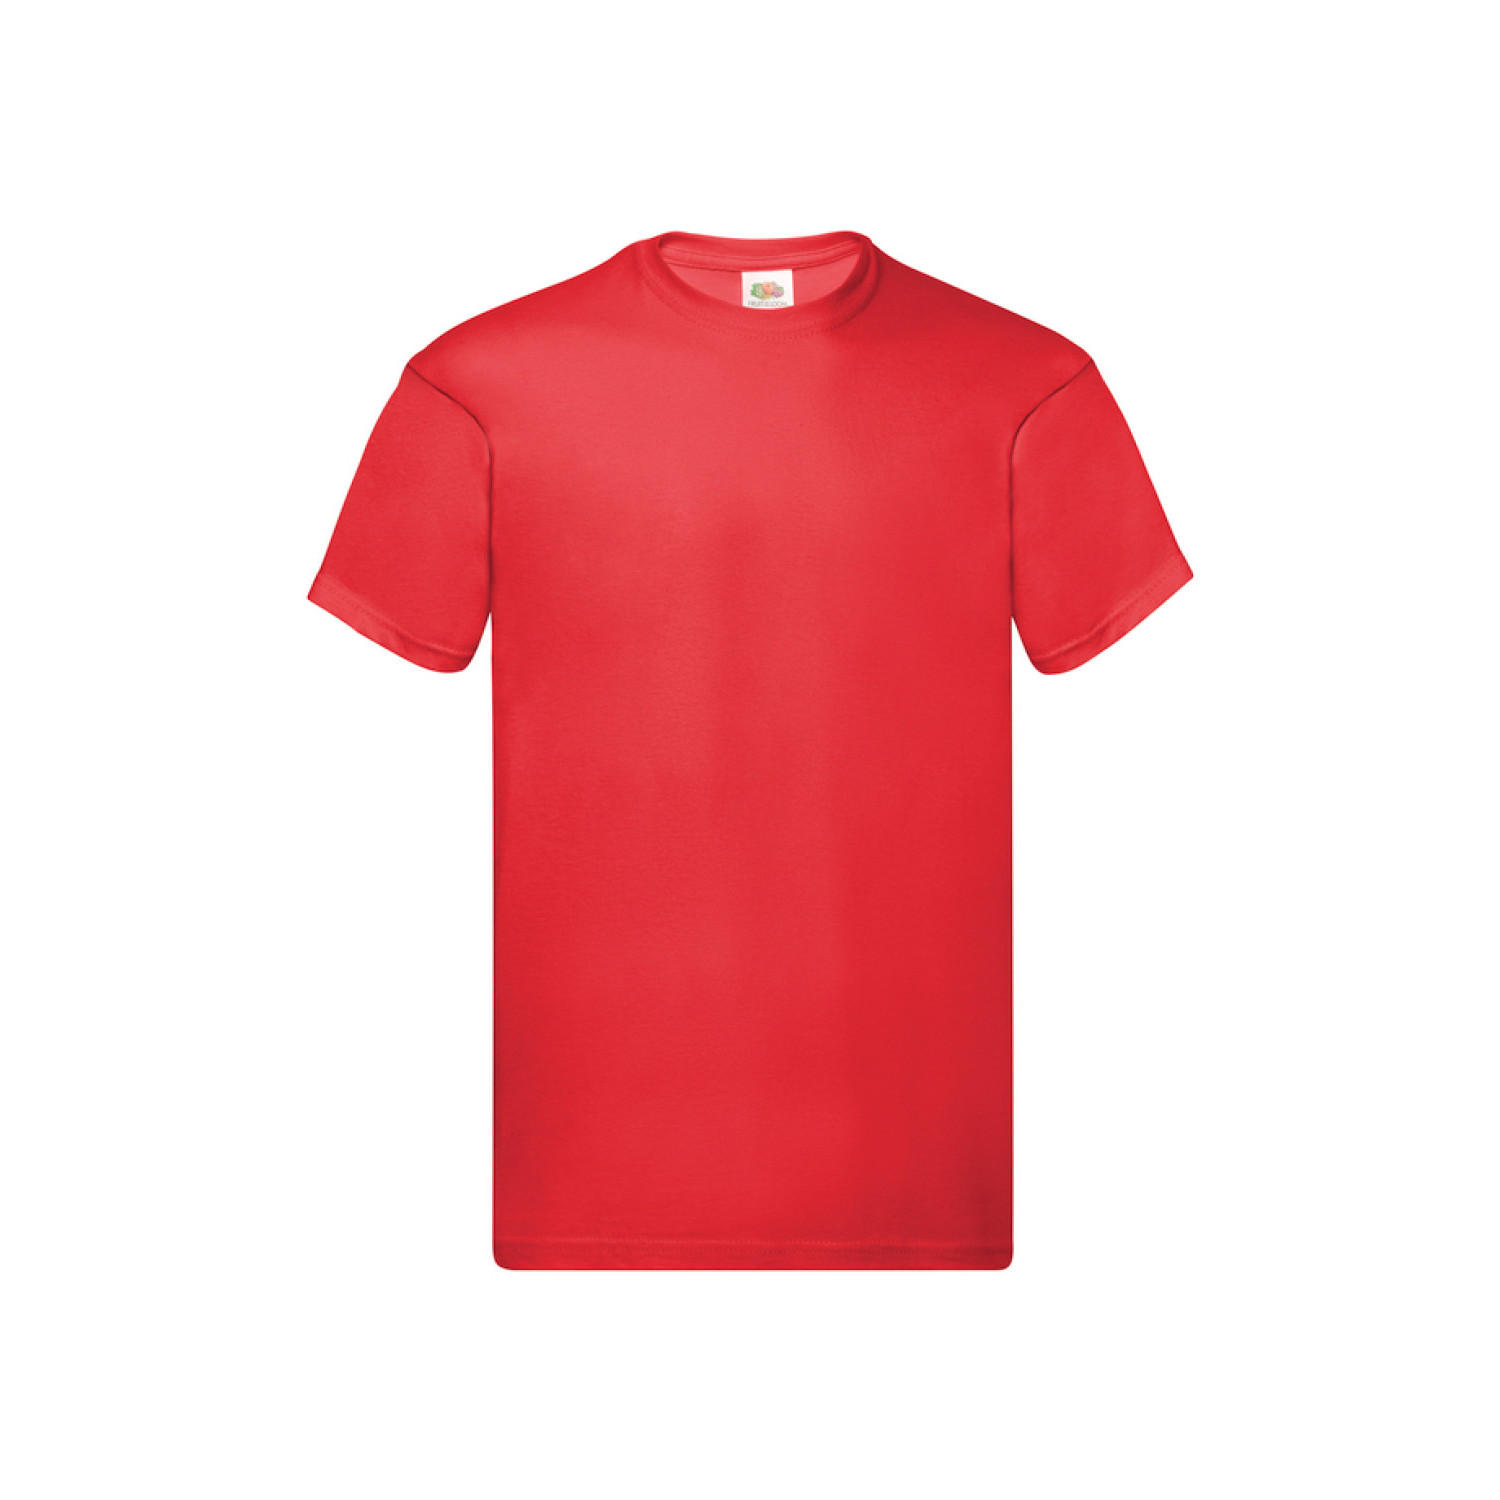 Мъжка тениска, червена